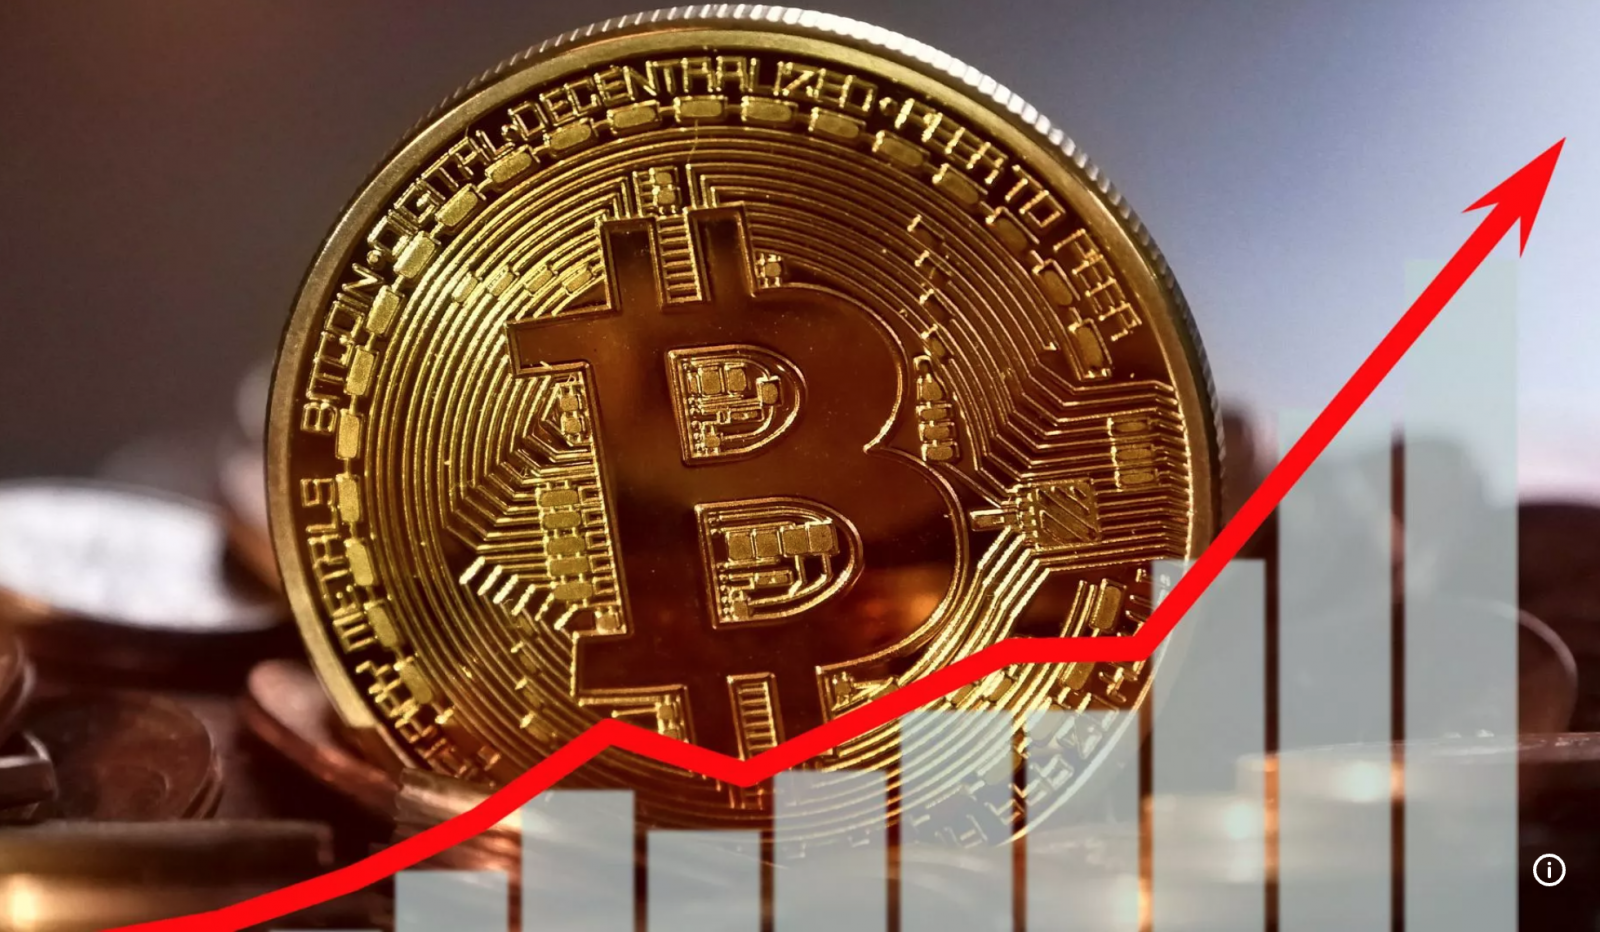 Hiện tại giá Bitcoin đang dao động trong khoảng từ 61.000 - 63.000 USD, thể hiện sự biến động tích cực trong thị trường tiền điện tử